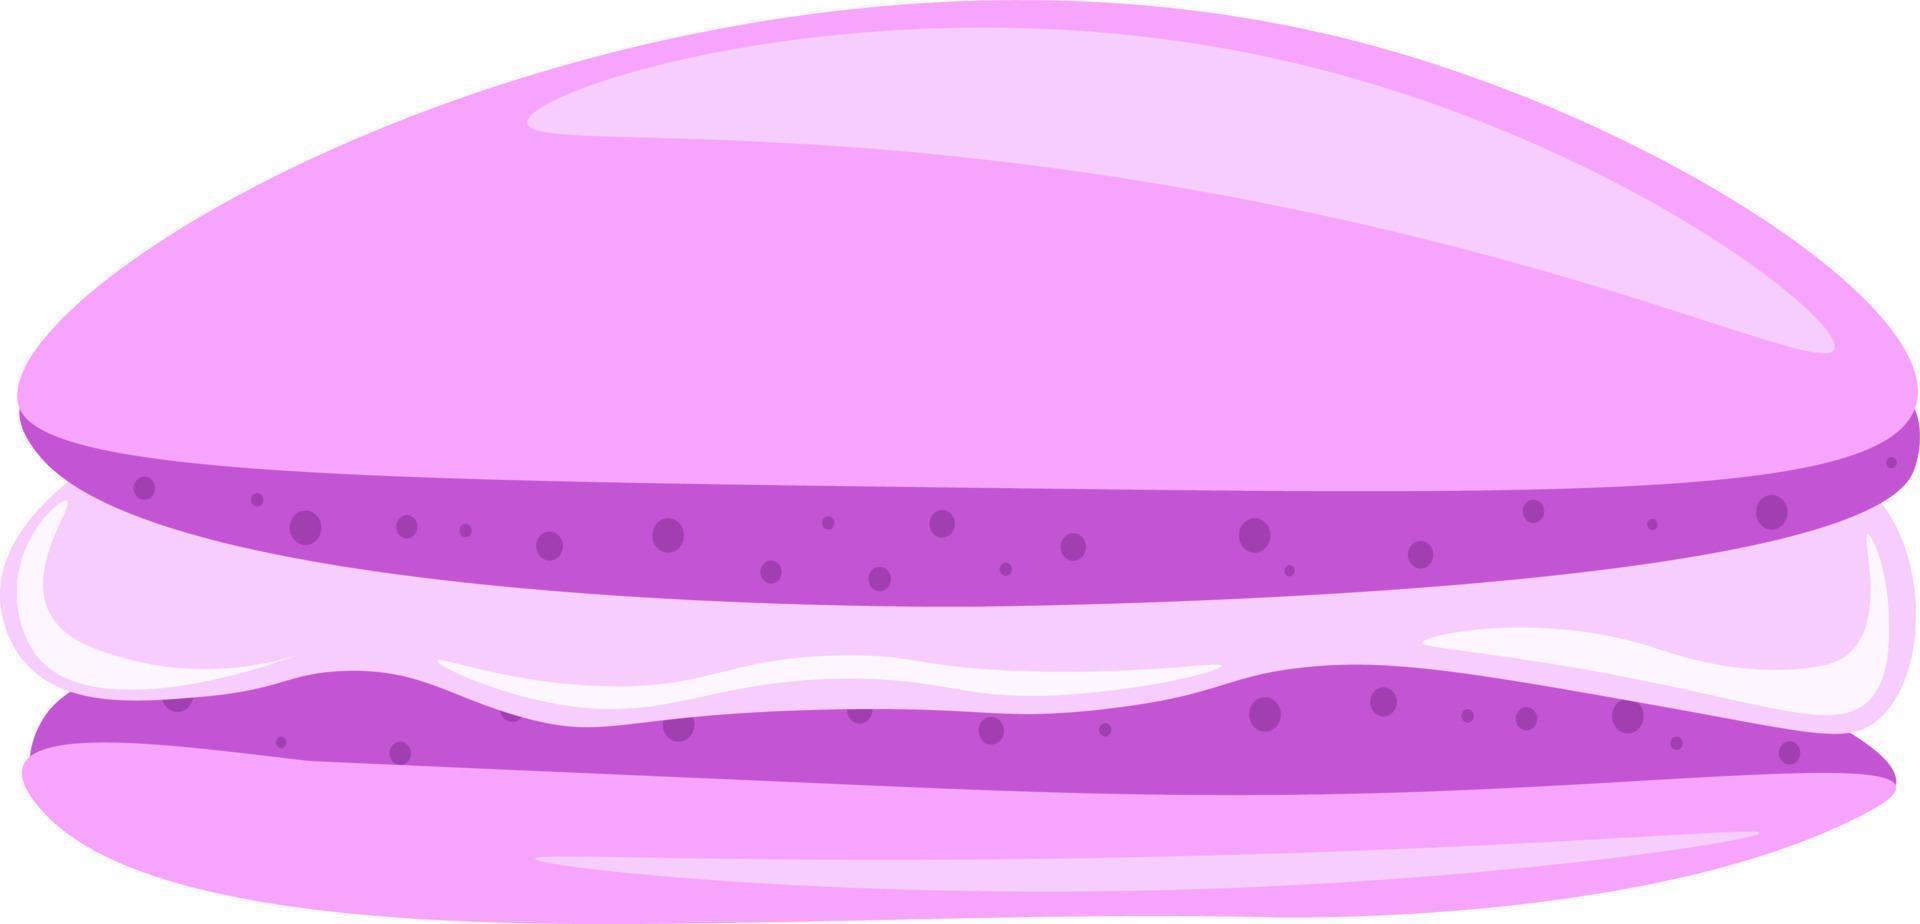 un macaron violet, un vecteur ou une illustration de couleur.